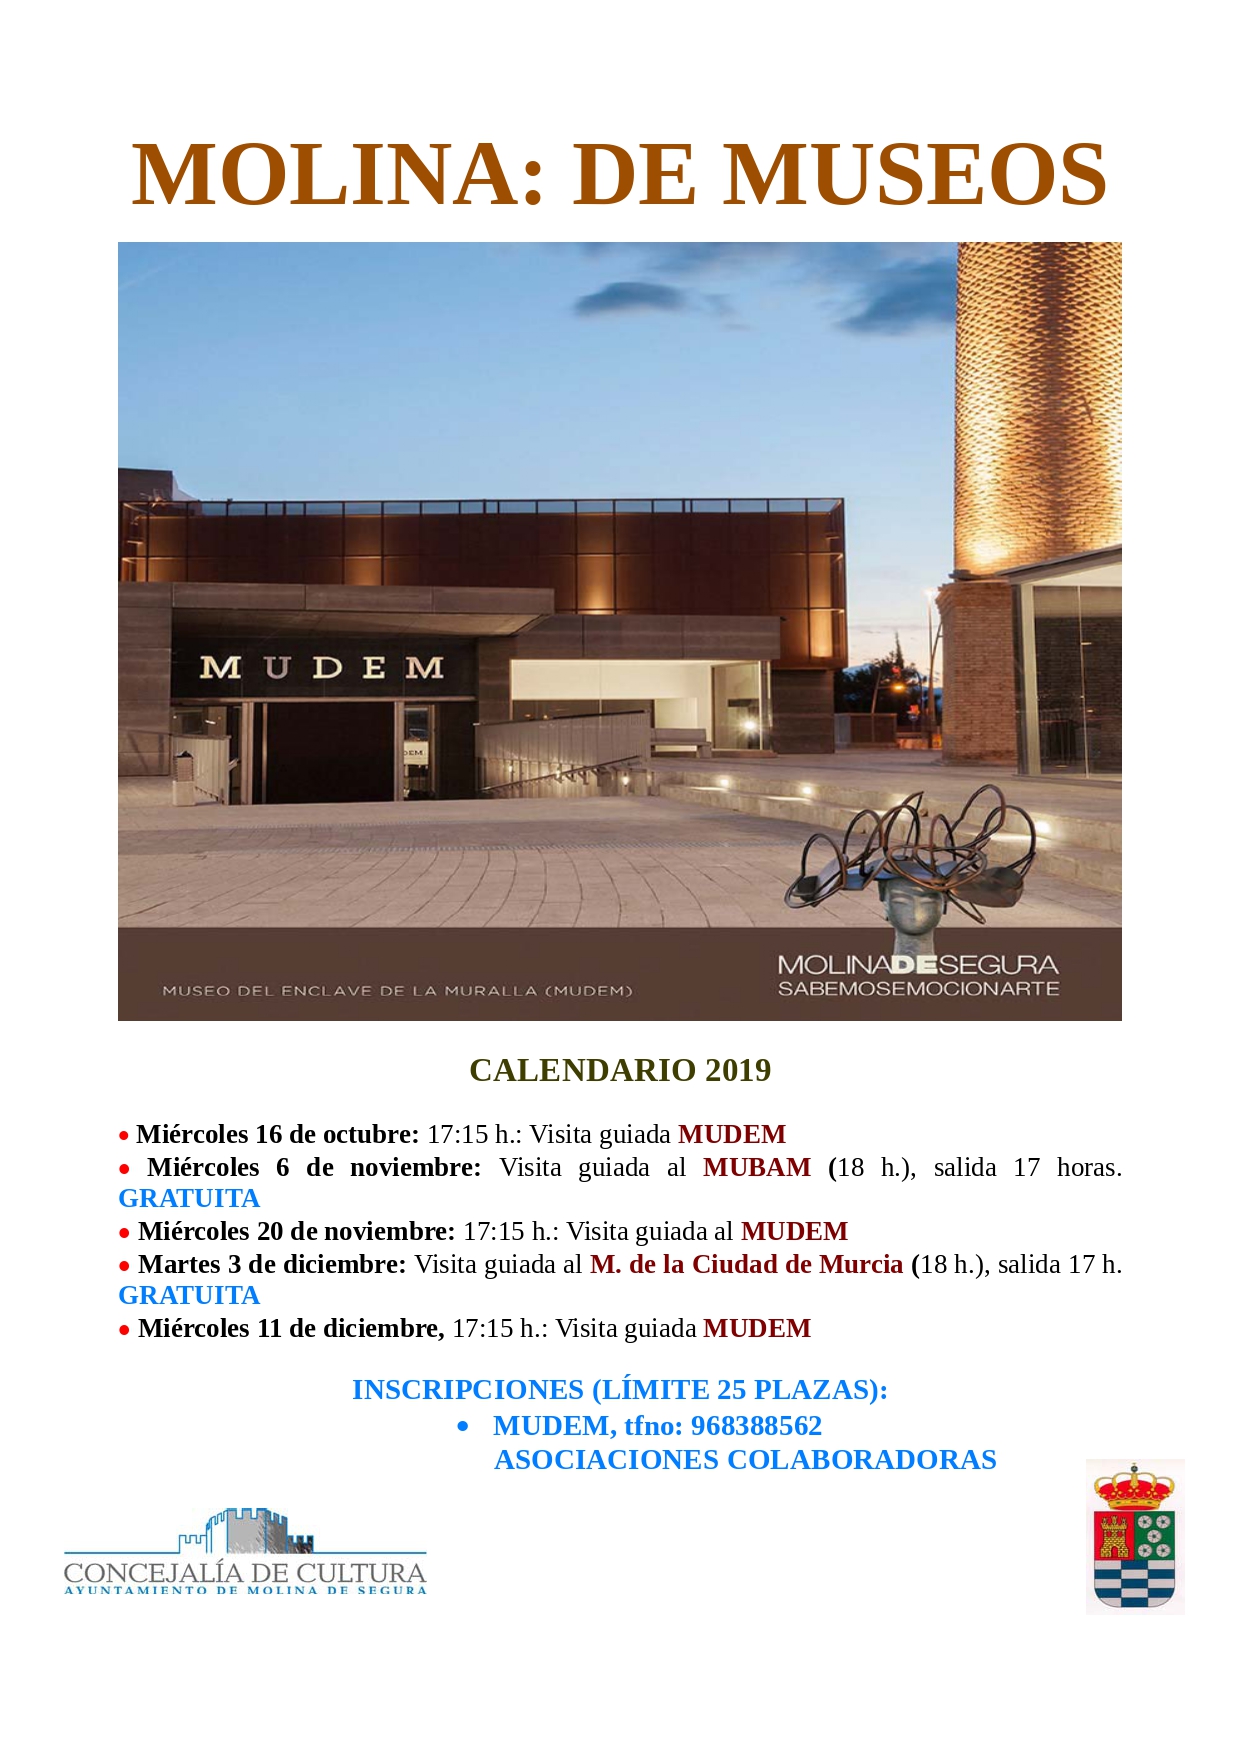 MOLINA DE MUSEOS 1_page-0001.jpg